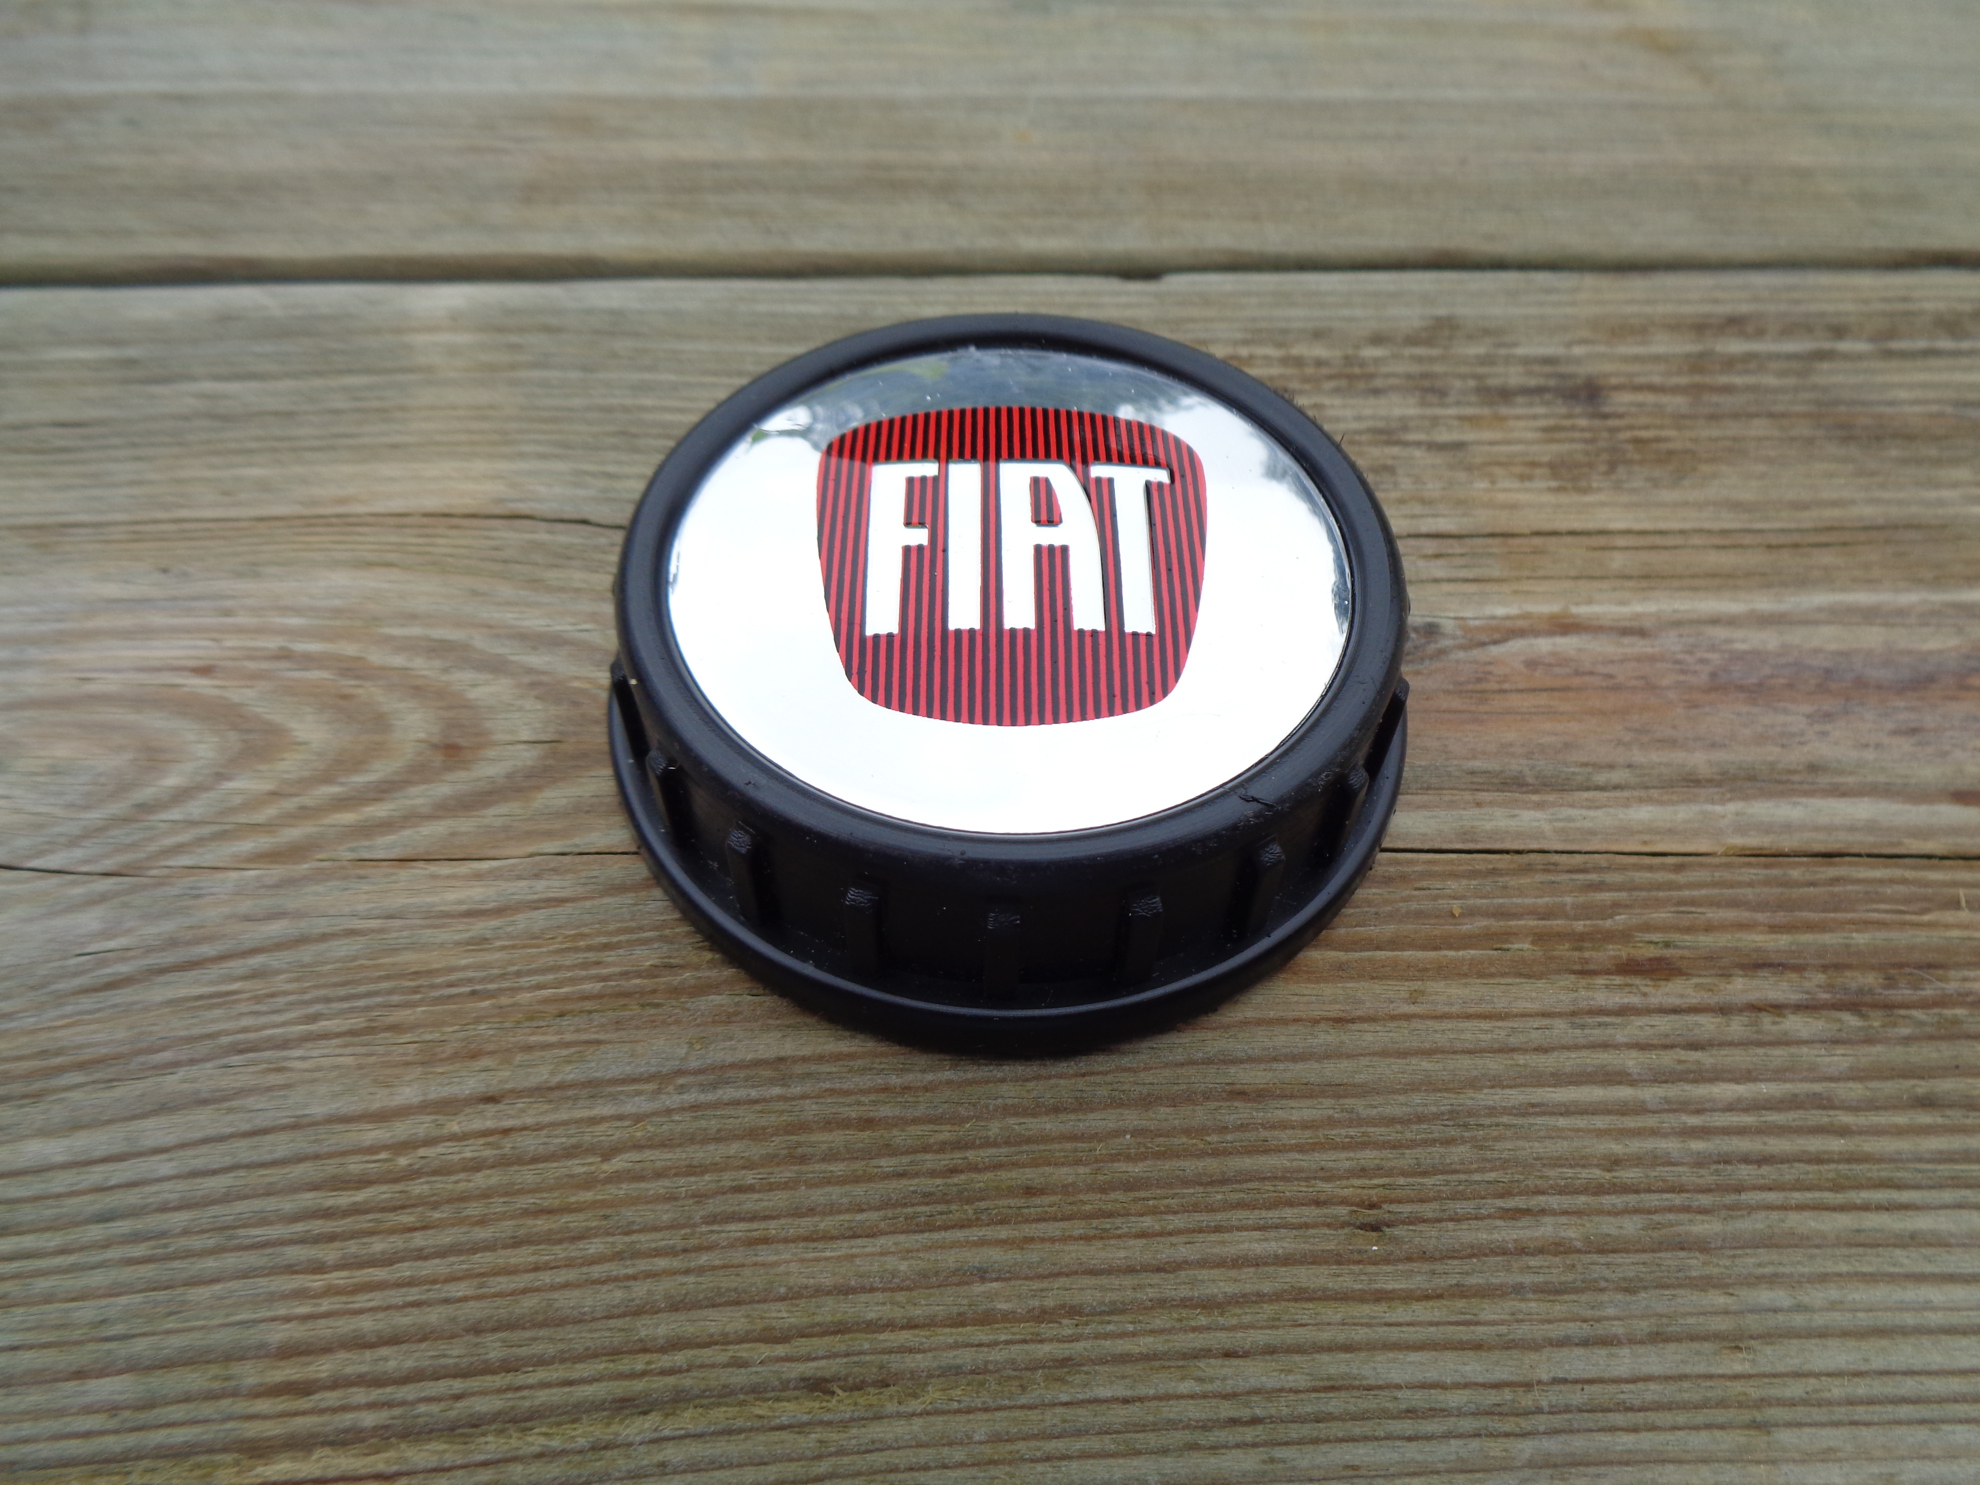 Afbeeldingen van tankvuldp met FIAT logo, chroomkleurig